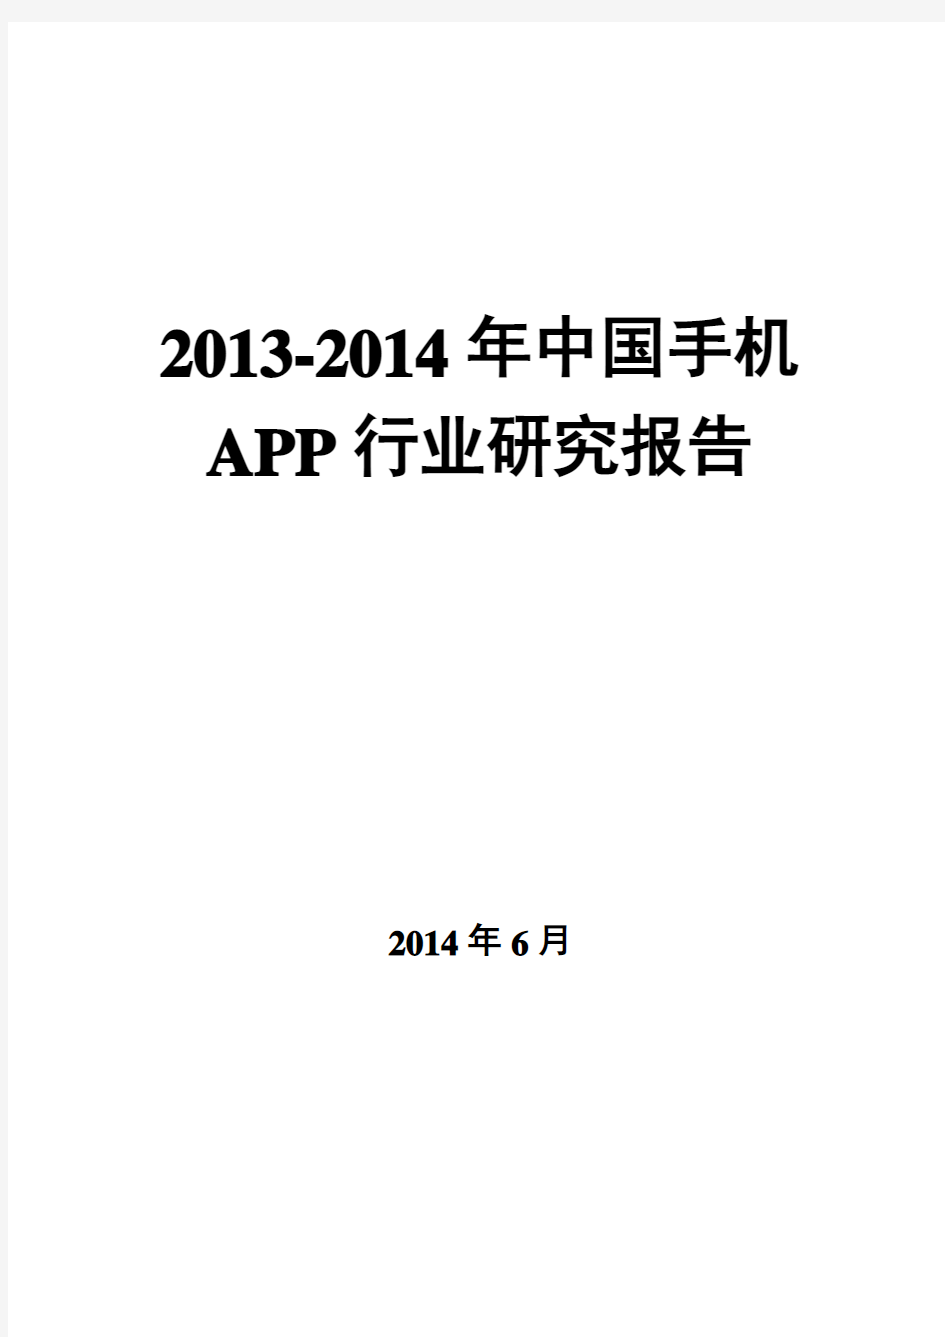 手机APP行业研究报告